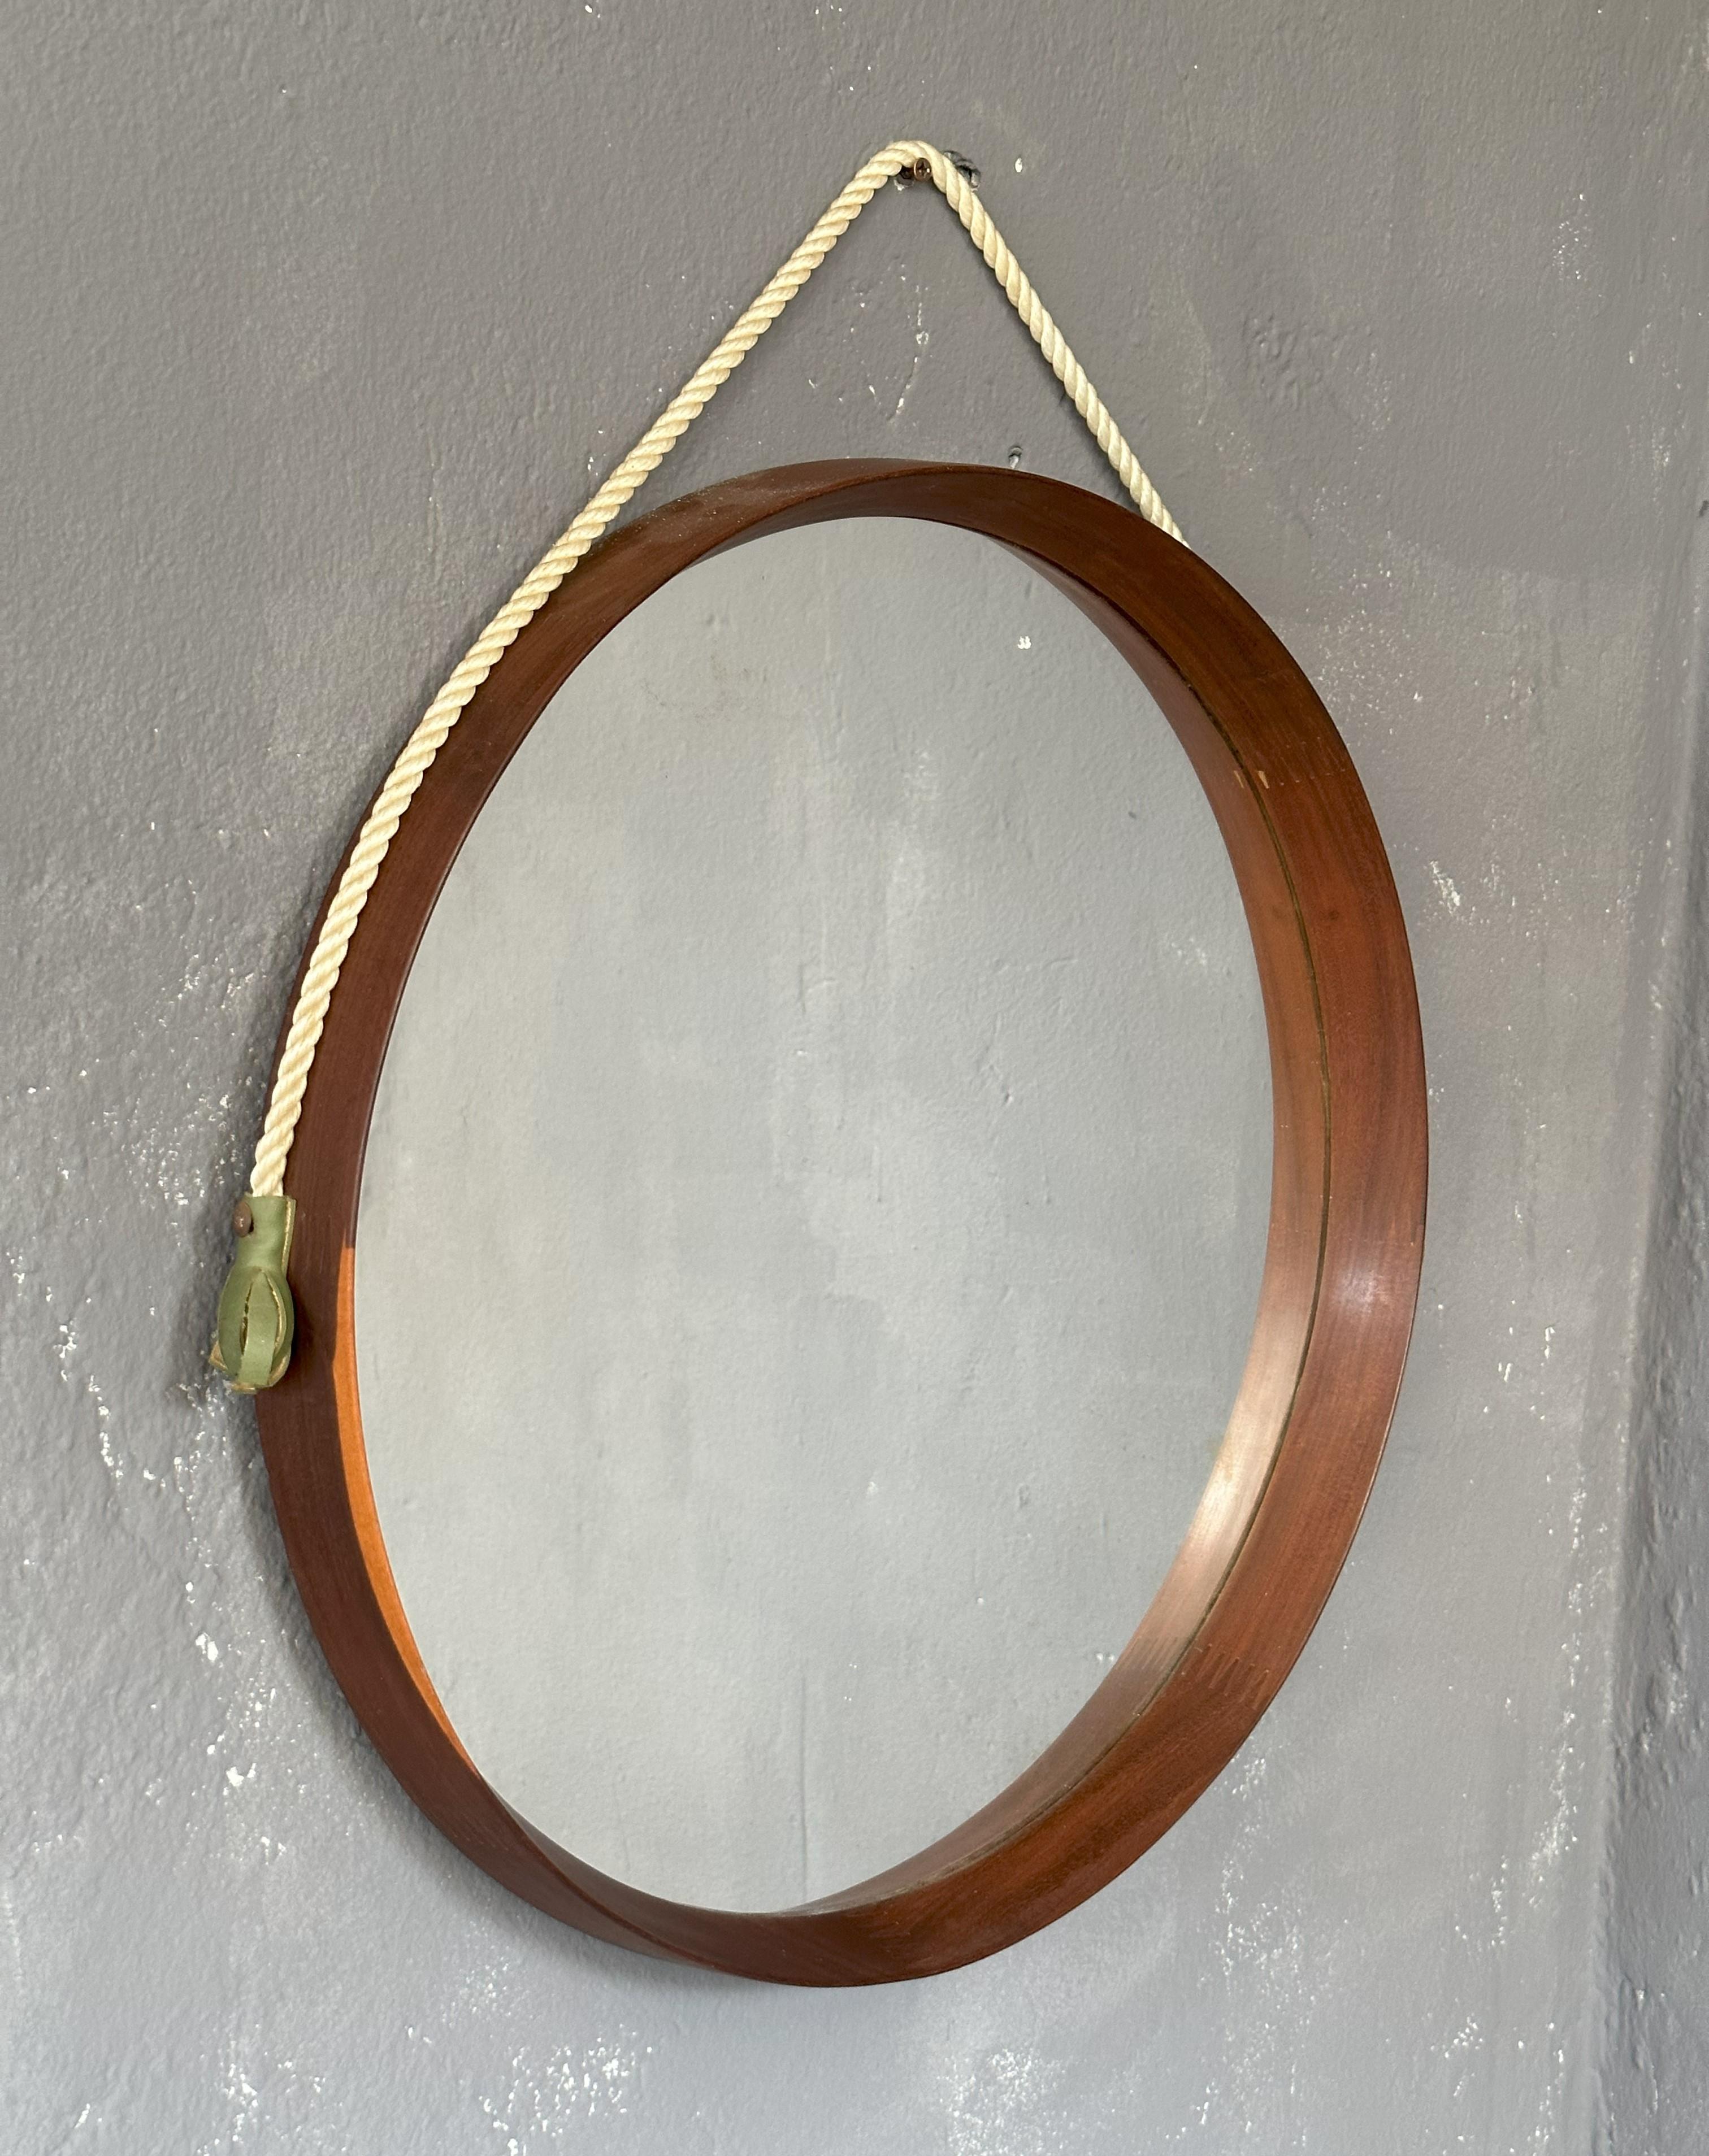 mirror hanging rope